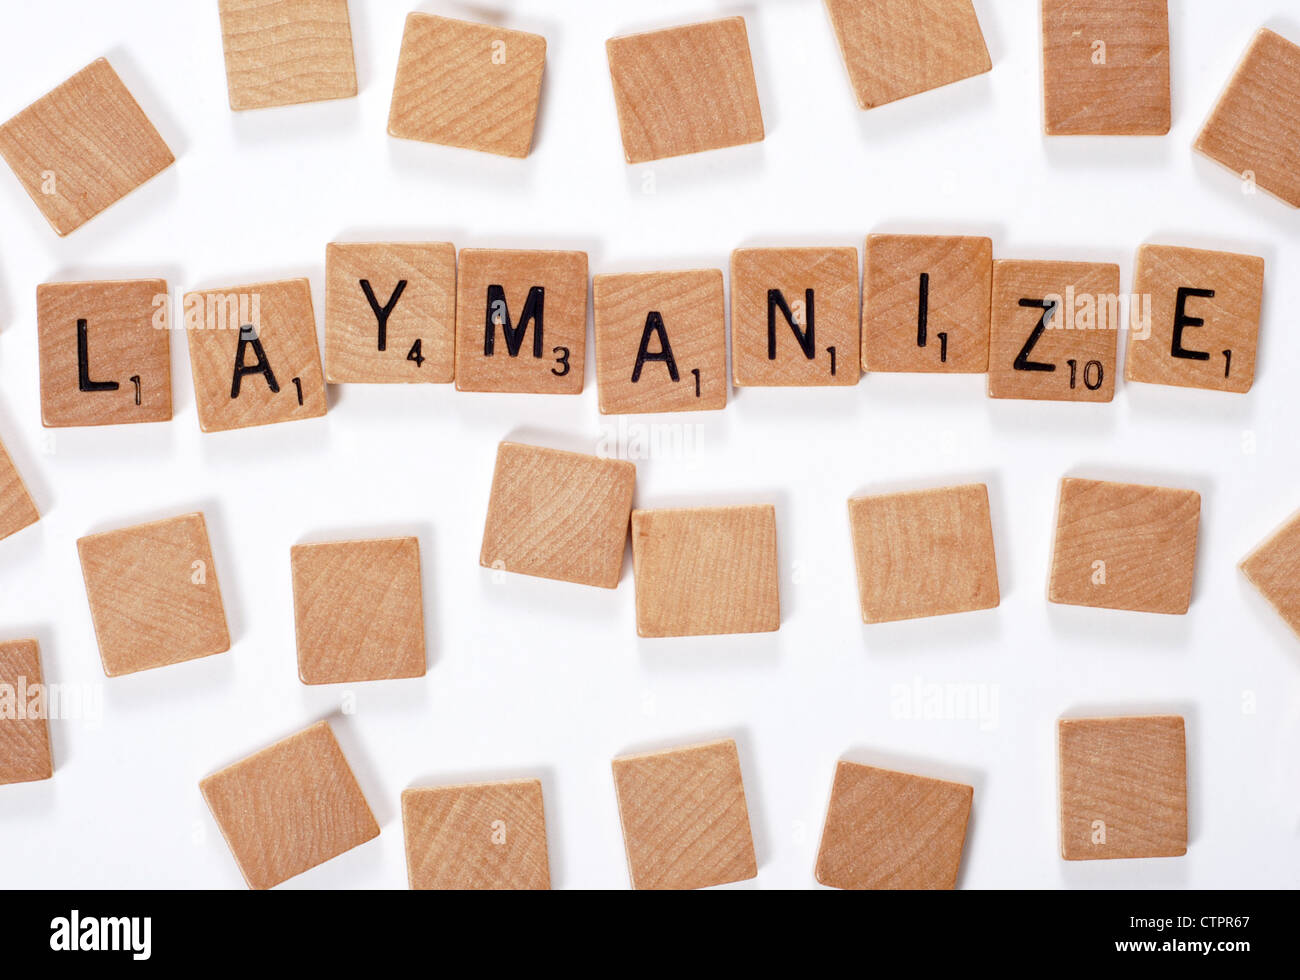 Ein neues Wörterbuch Wort: Laymanize, ausgeschrieben mit Holzfliesen Stockfoto